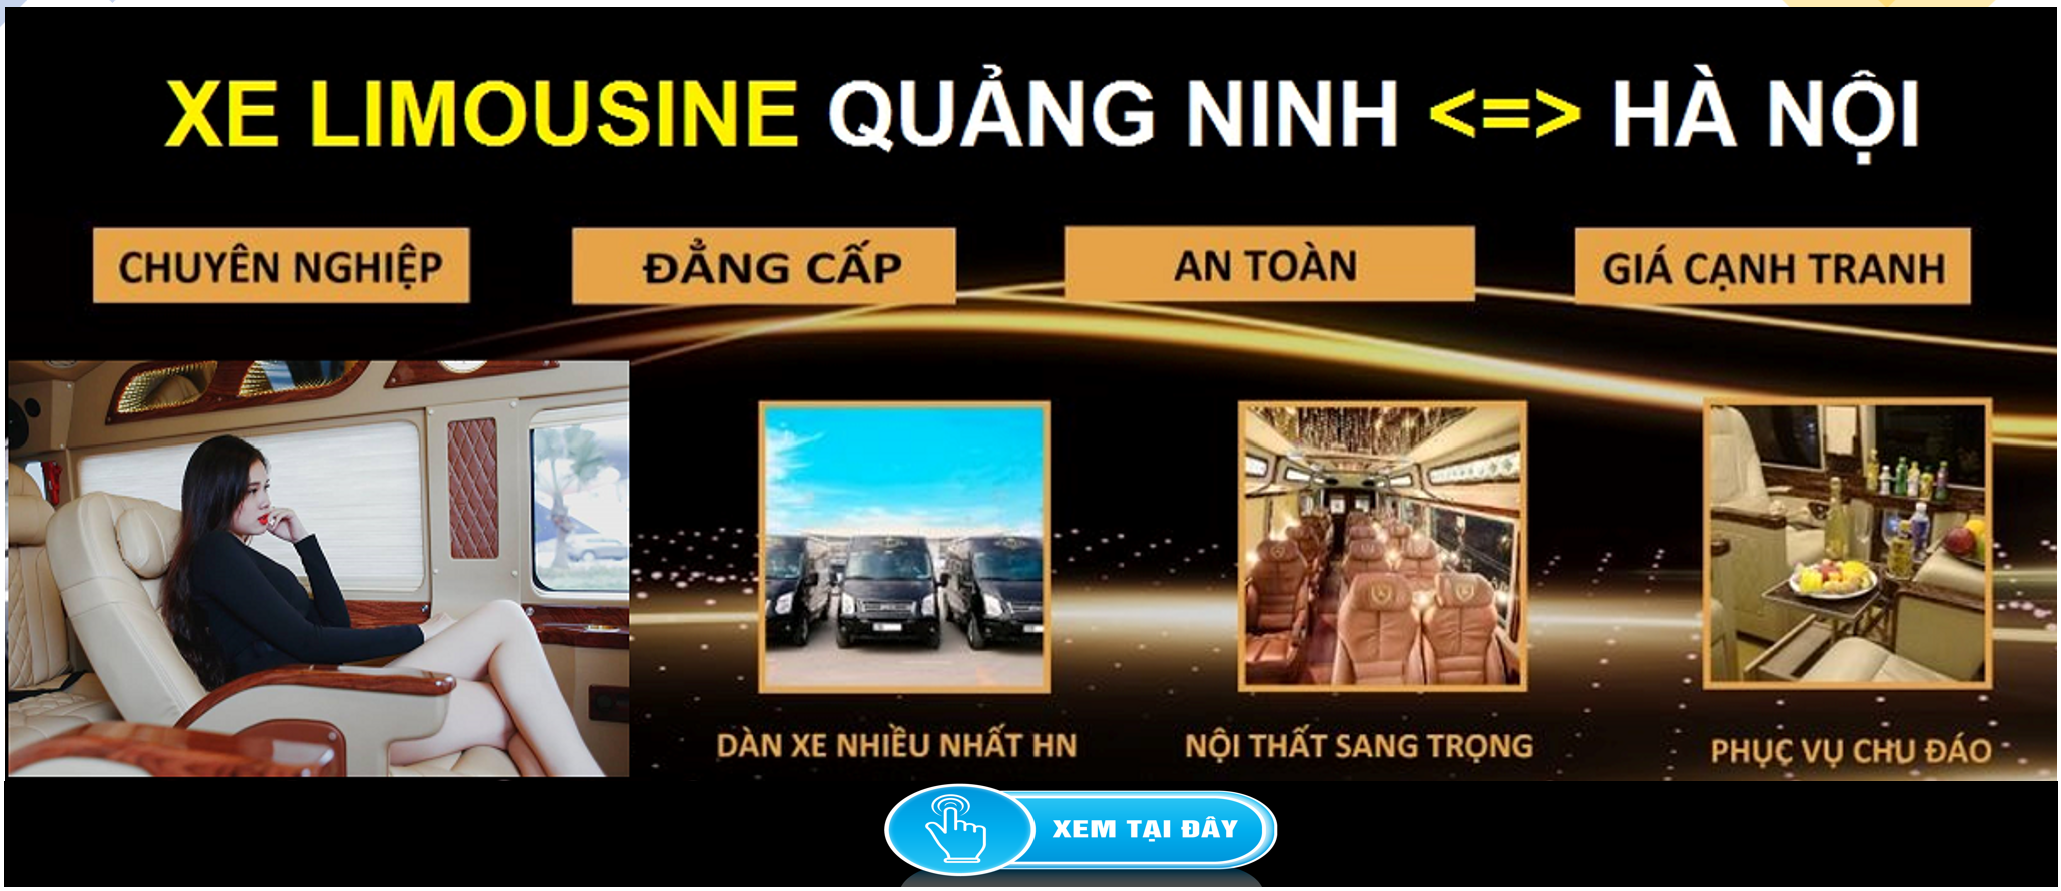 Xe Limousine Ha Noi Quang Ninh dua don tai nha 1d - VinFast Thăng Long - 68 Trịnh Văn Bô, Nam Từ Liêm, Hà Nội. Hotline 0985.770.333